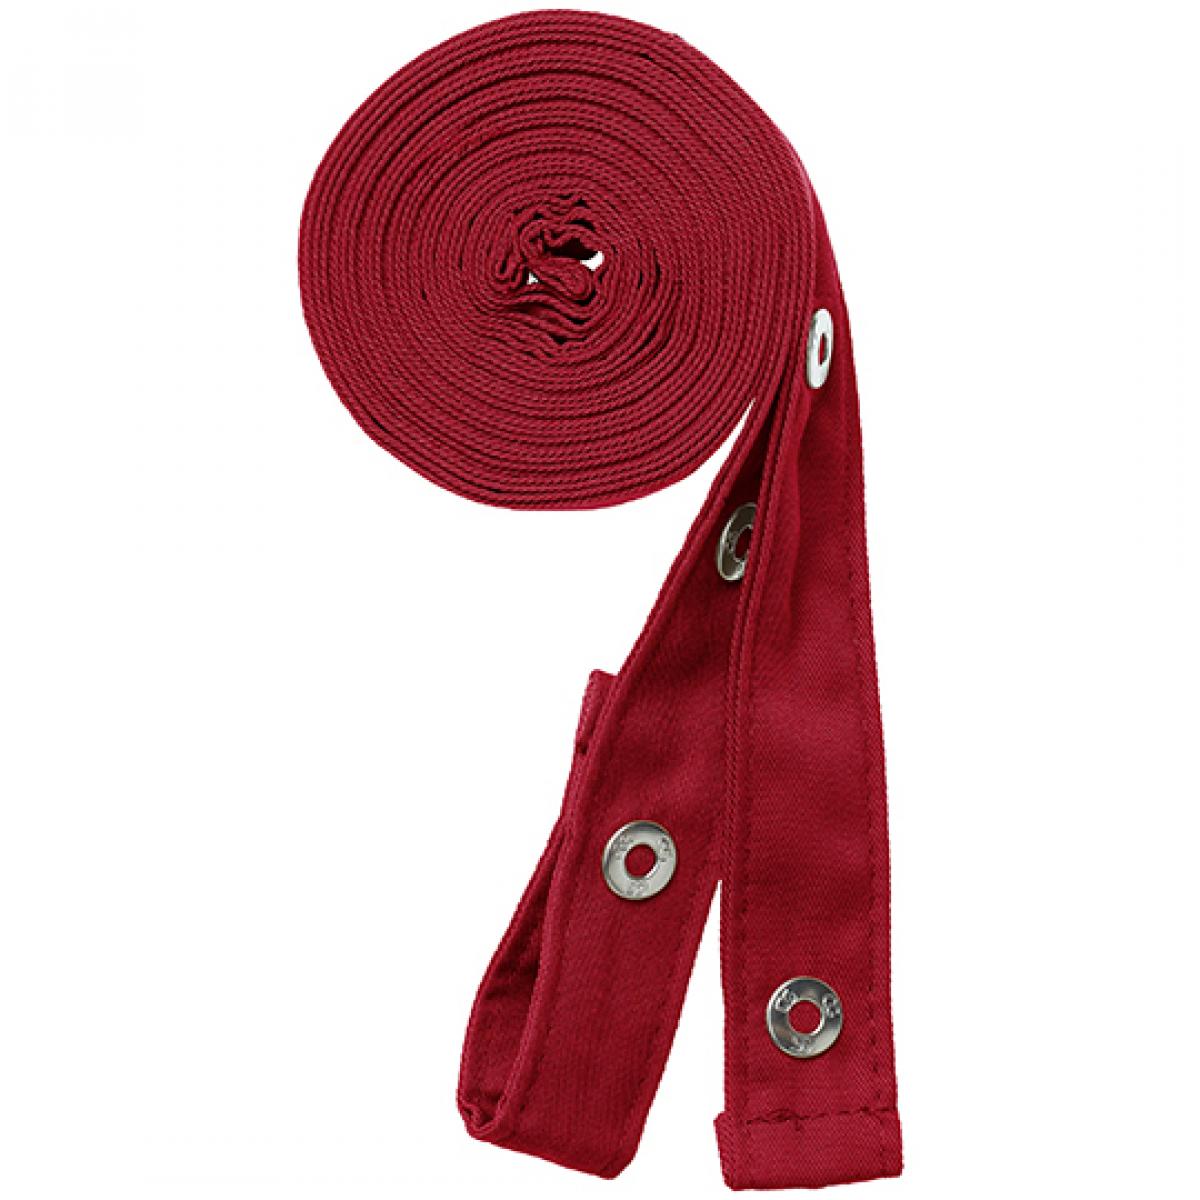 Hersteller: CG Workwear Herstellernummer: 42141 Artikelbezeichnung: Potenza X Classic Strap Set je 230 cm lang und 2,5 cm breit Farbe: Regency Red